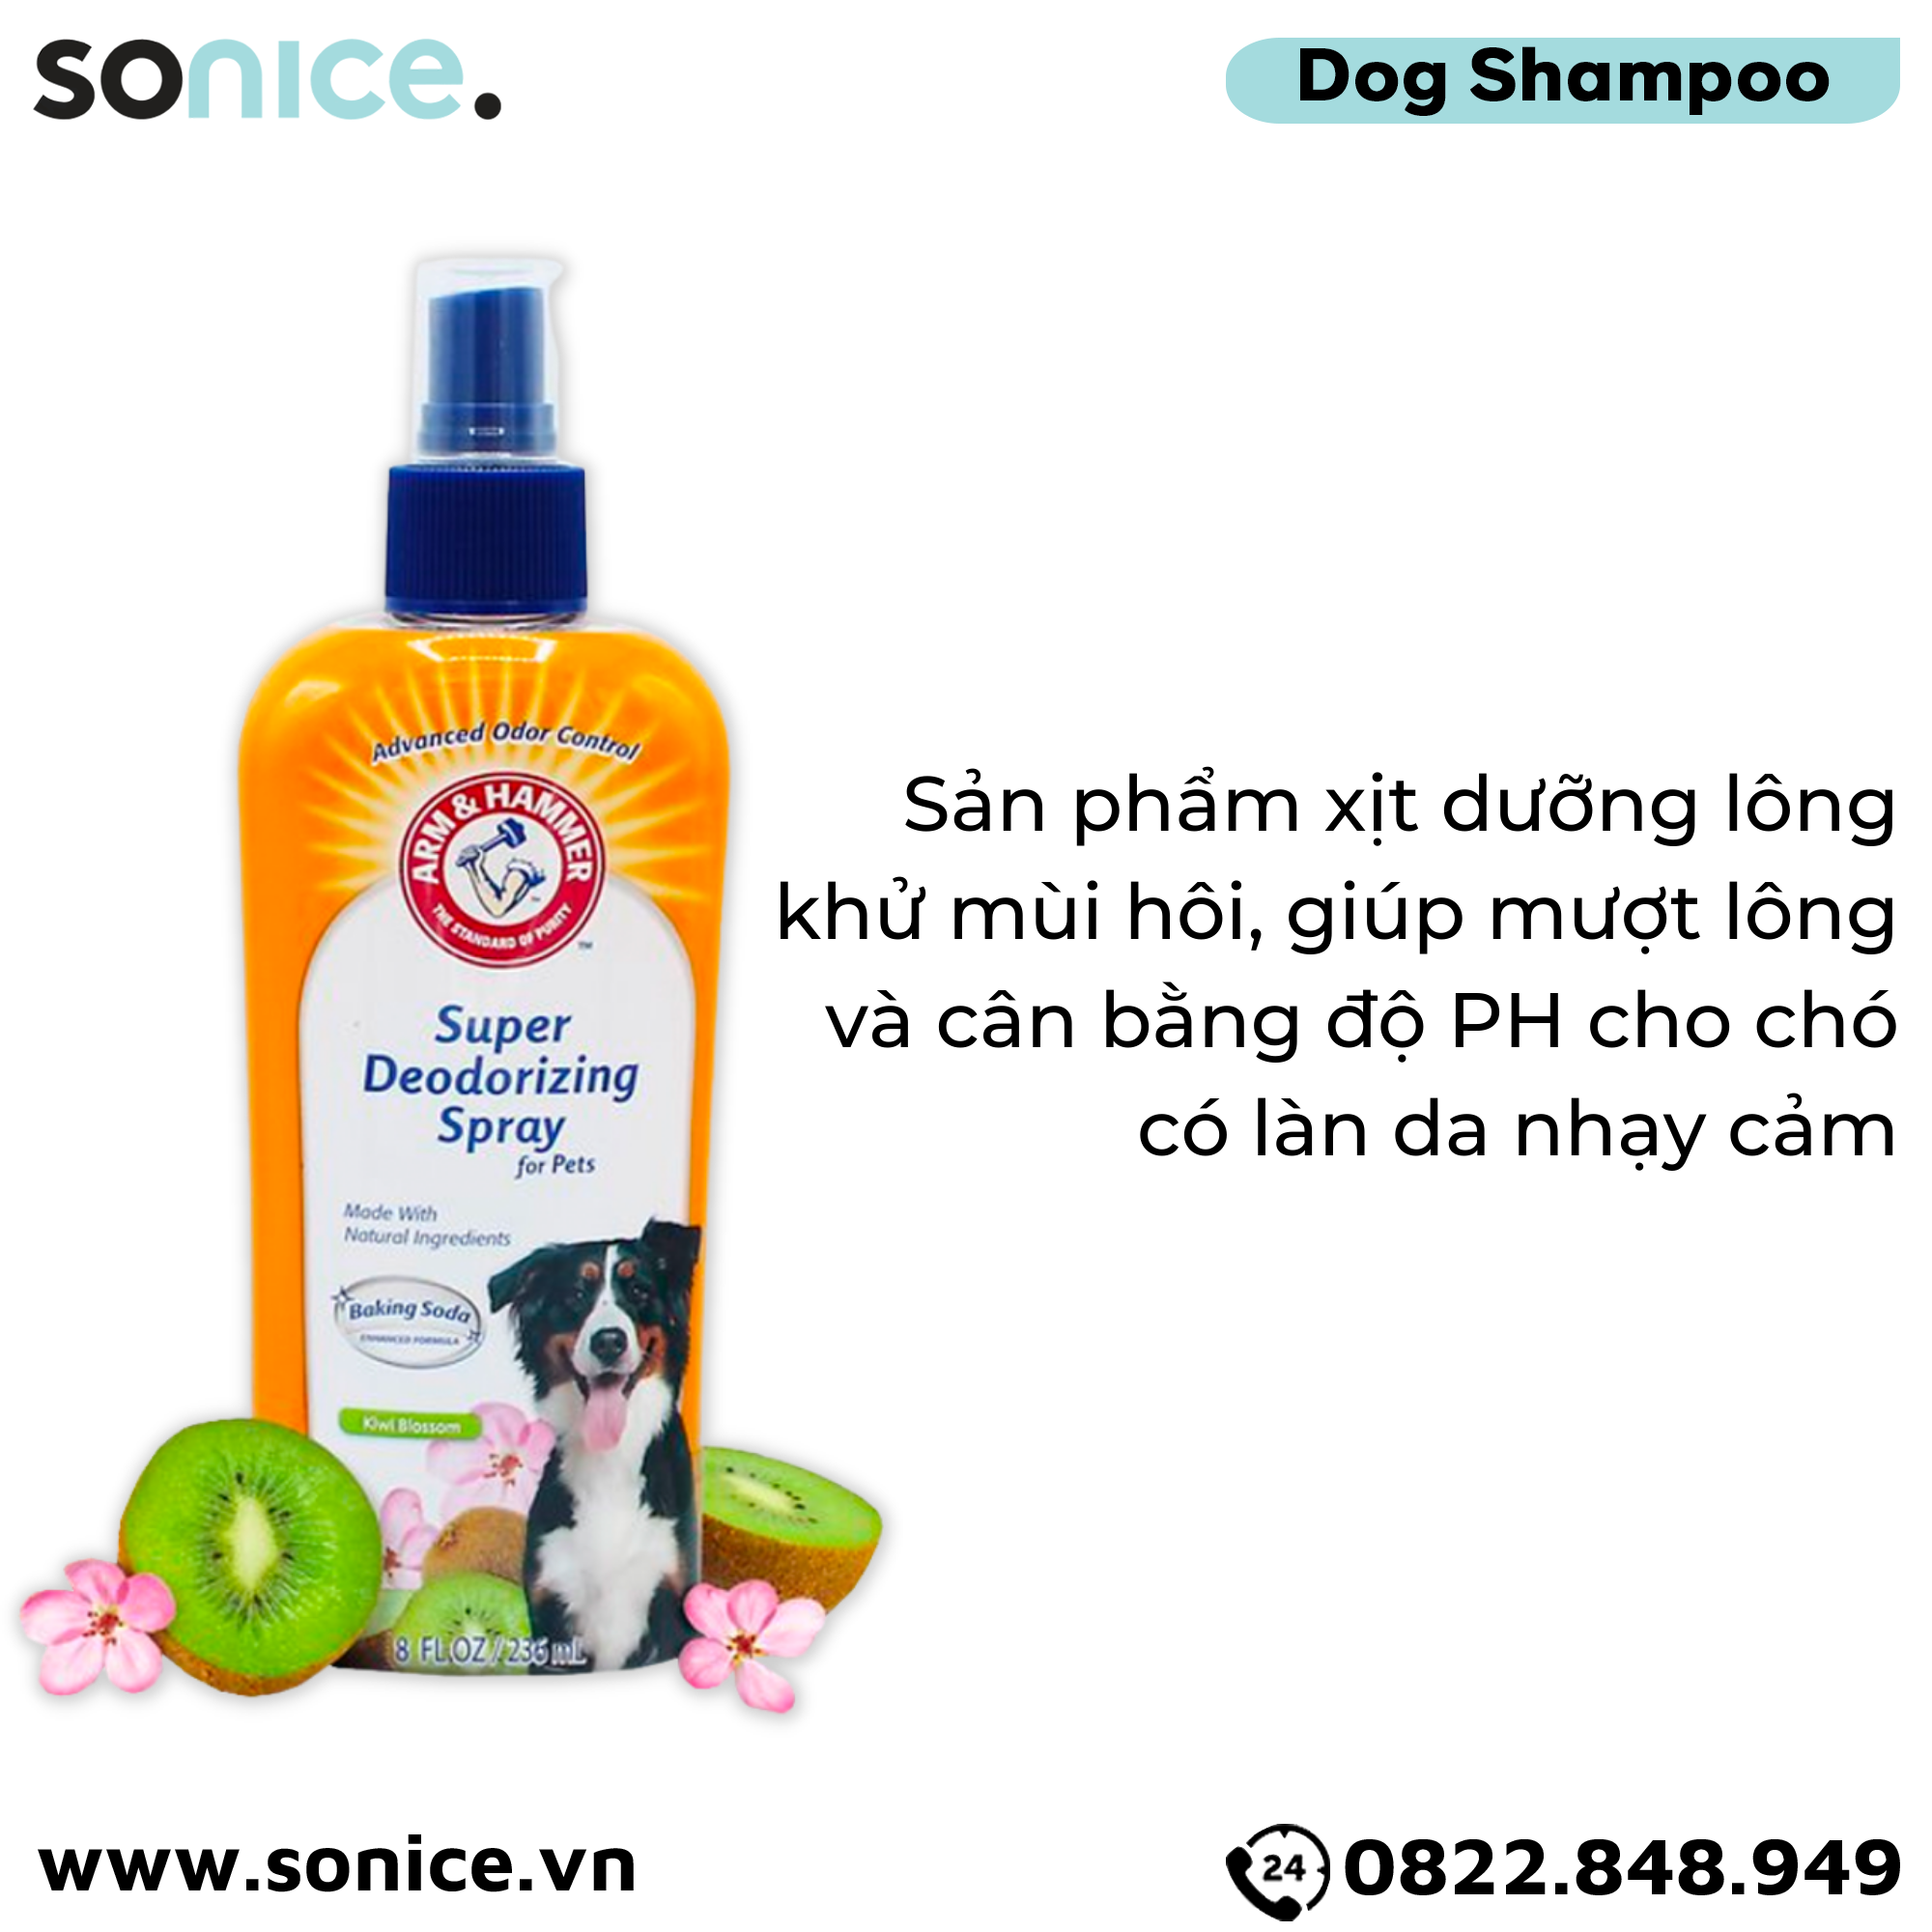  Xịt khử mùi dưỡng lông ARM & HAMMER Super Deodorizing Spray Kiwi Blossom for Dog 236ml - Hương kiwi và hoa nhẹ nhàng SONICE. 